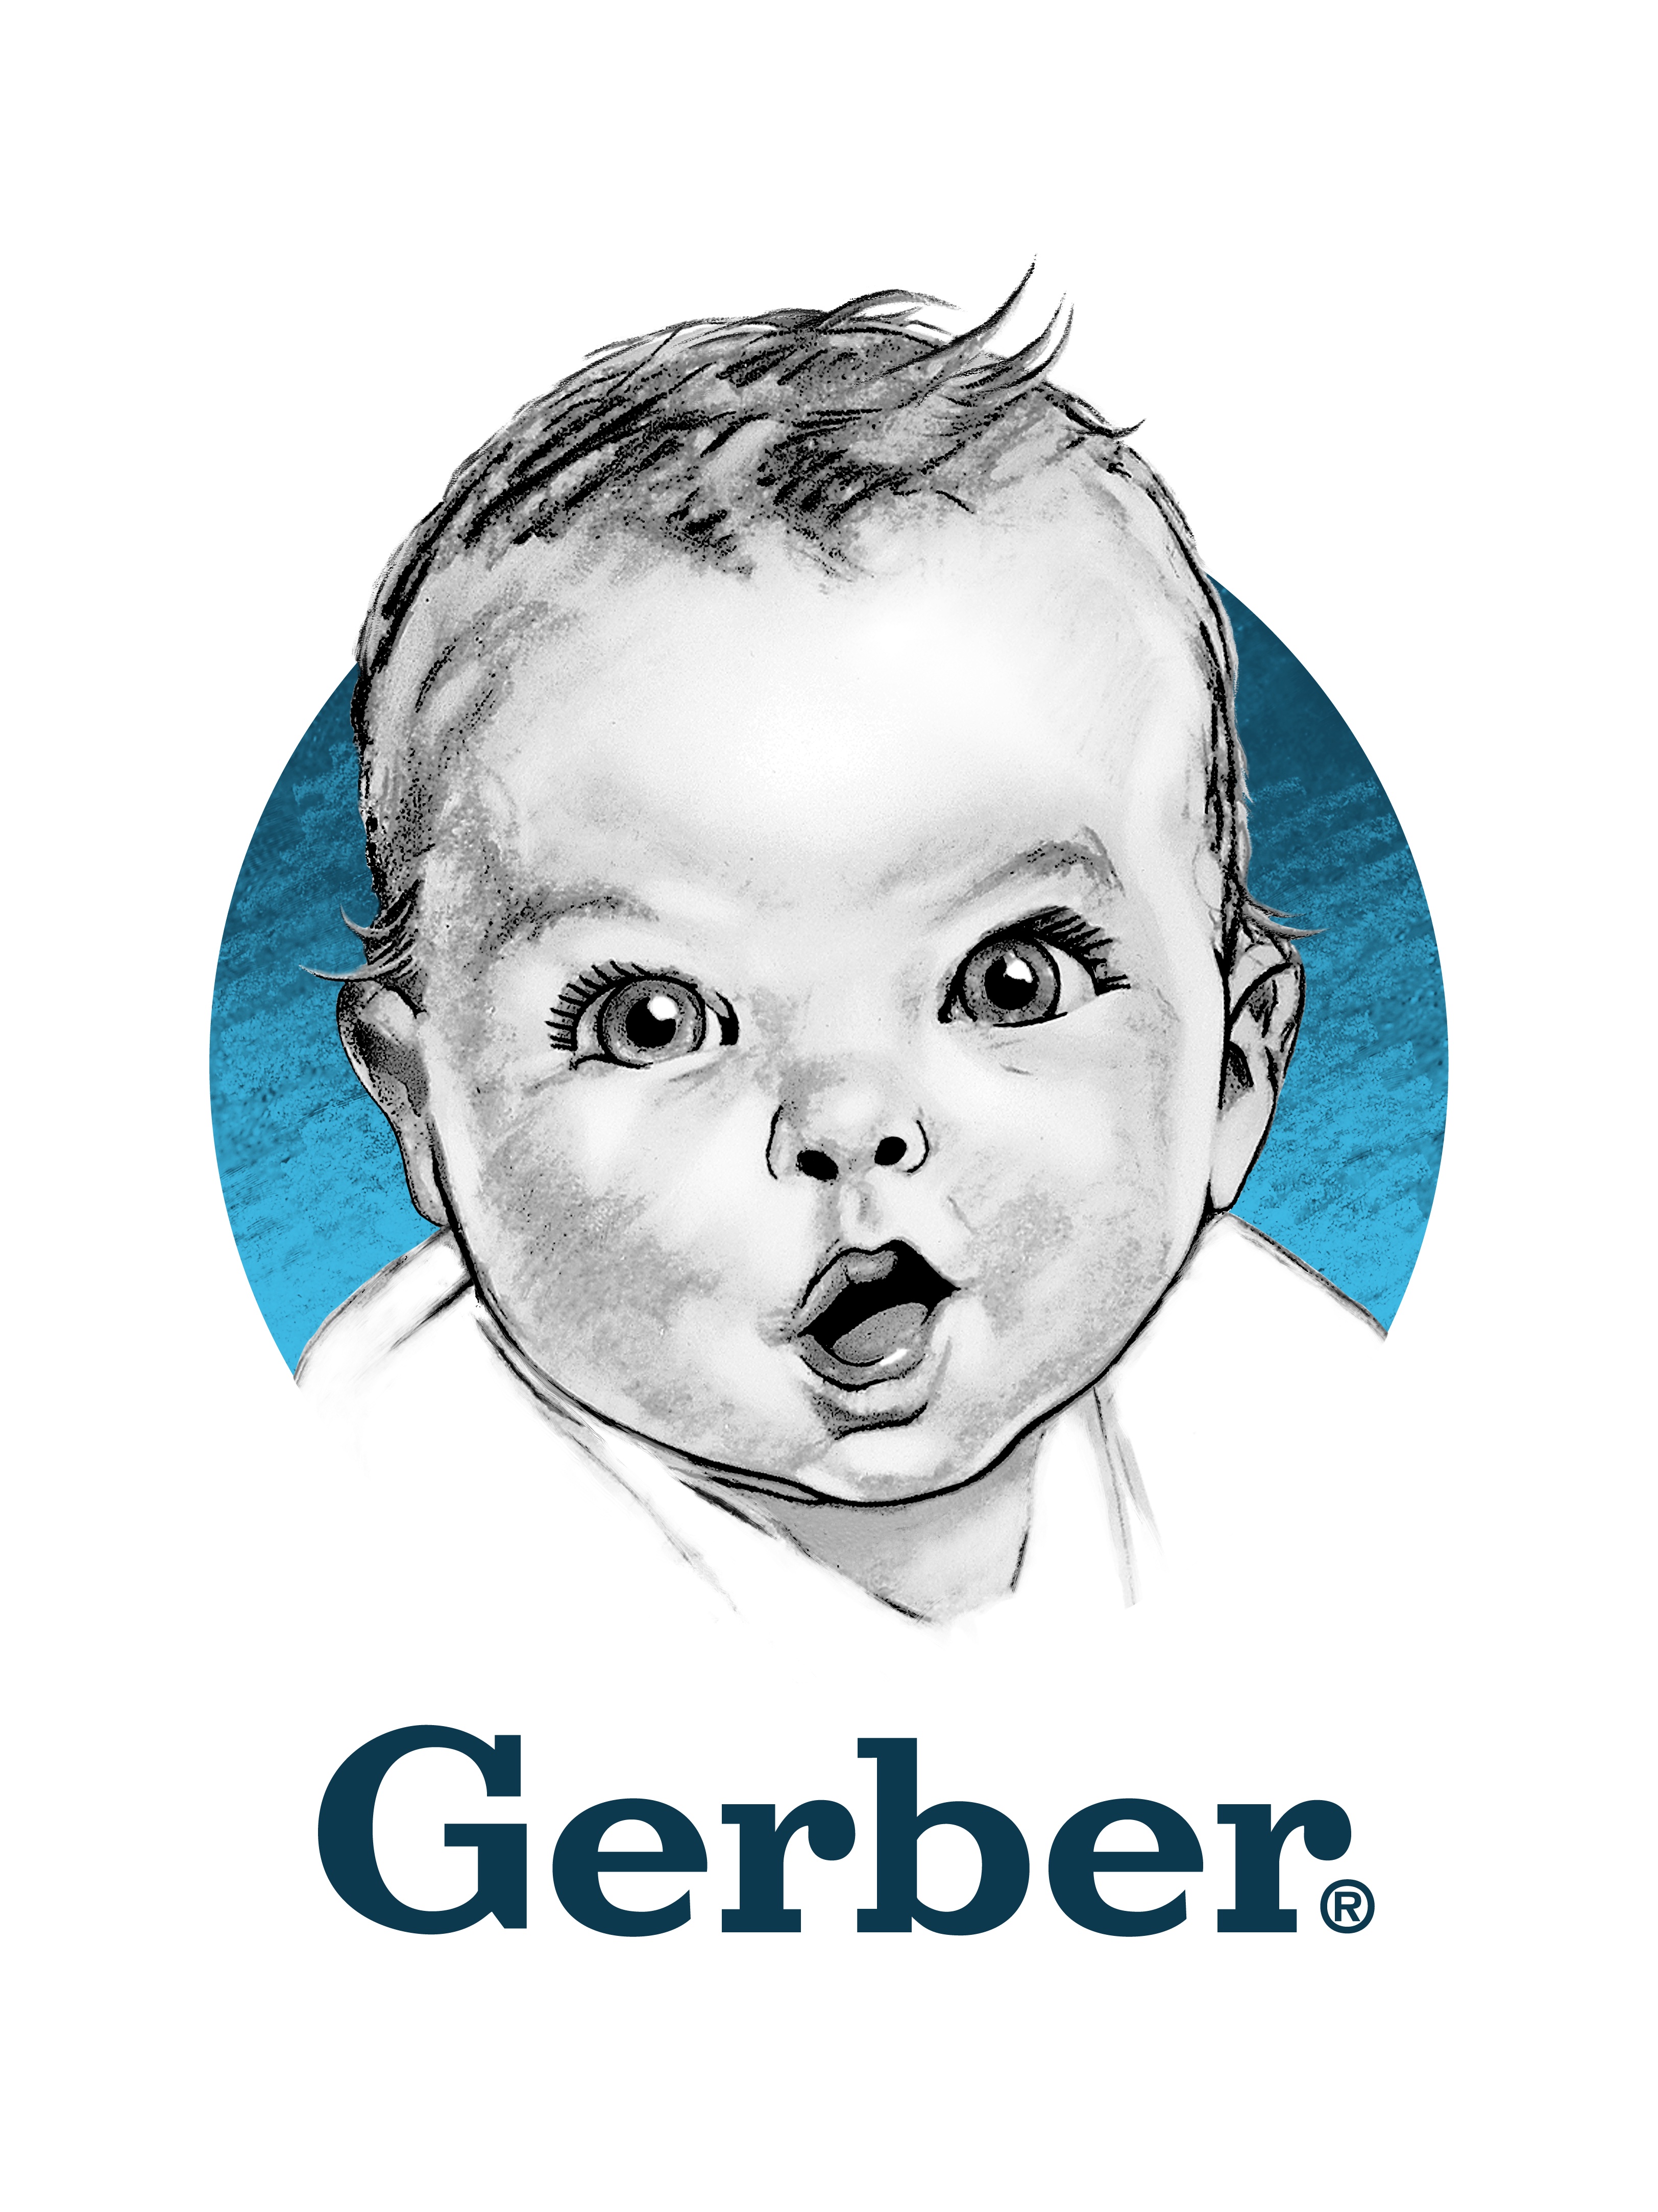 Gerber Baby | tunersread.com